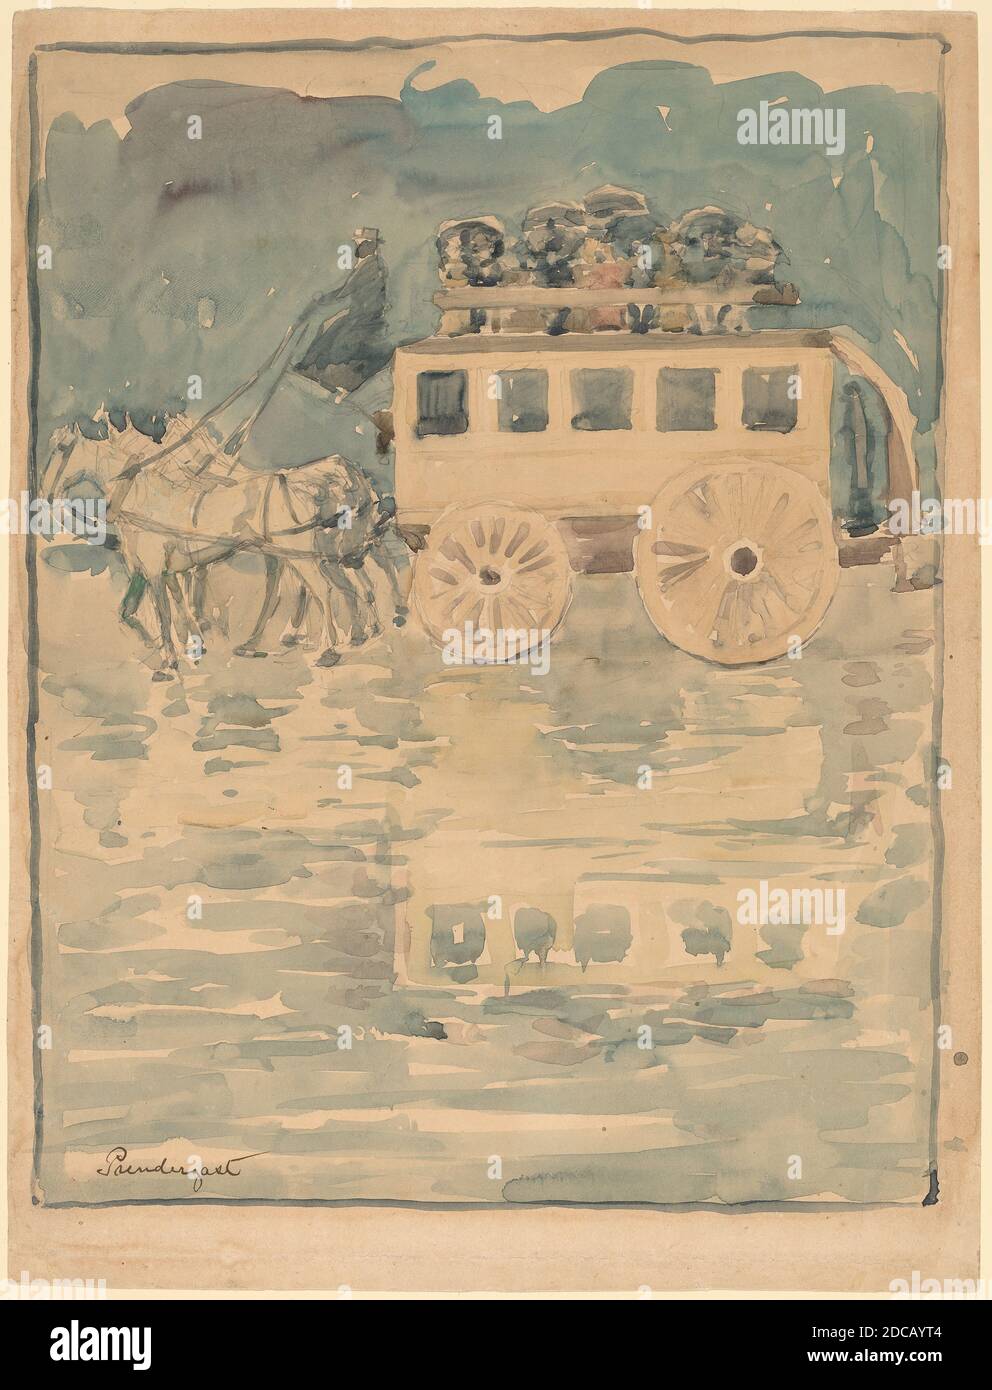 Maurice Prendergast, (artiste), cuisine américaine, 1858 - 1924, Omnibus parisien, 1893/1894, aquarelle sur graphite sur papier vélin, feuille: 30.7 × 23.3 cm (12 1/16 × 9 3/16 po Banque D'Images